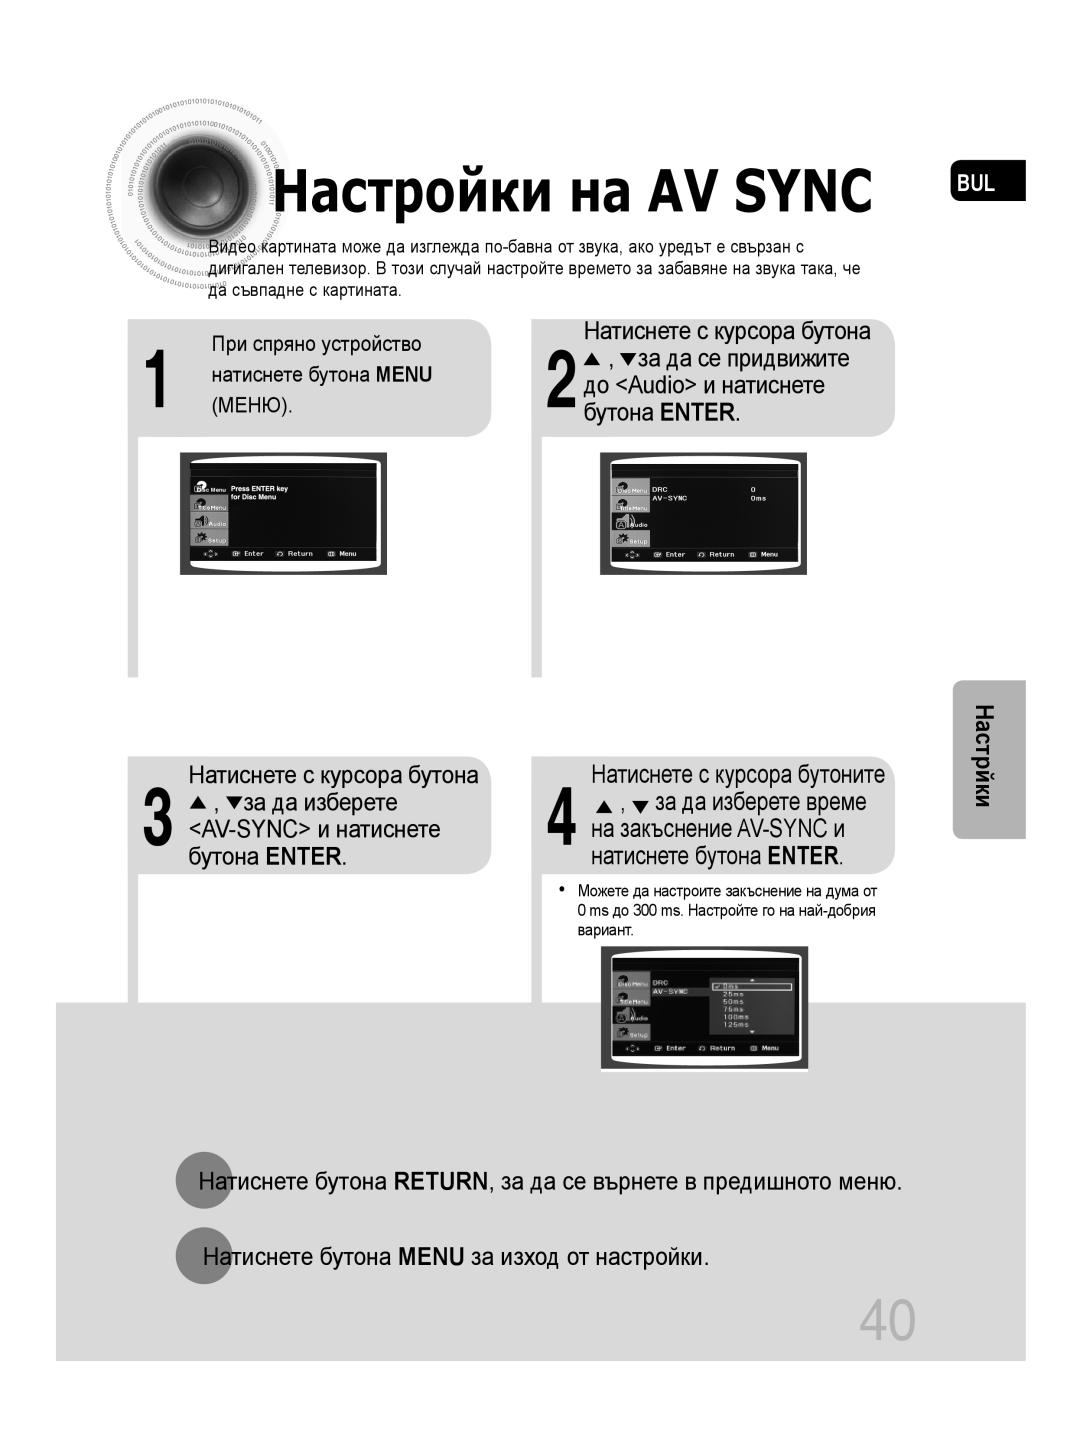 Samsung MM-C330D/EDC Натиснете с курсора бутоните, за да изберете време, AV-SYNC и натиснете, на закъснение AV-SYNC и 